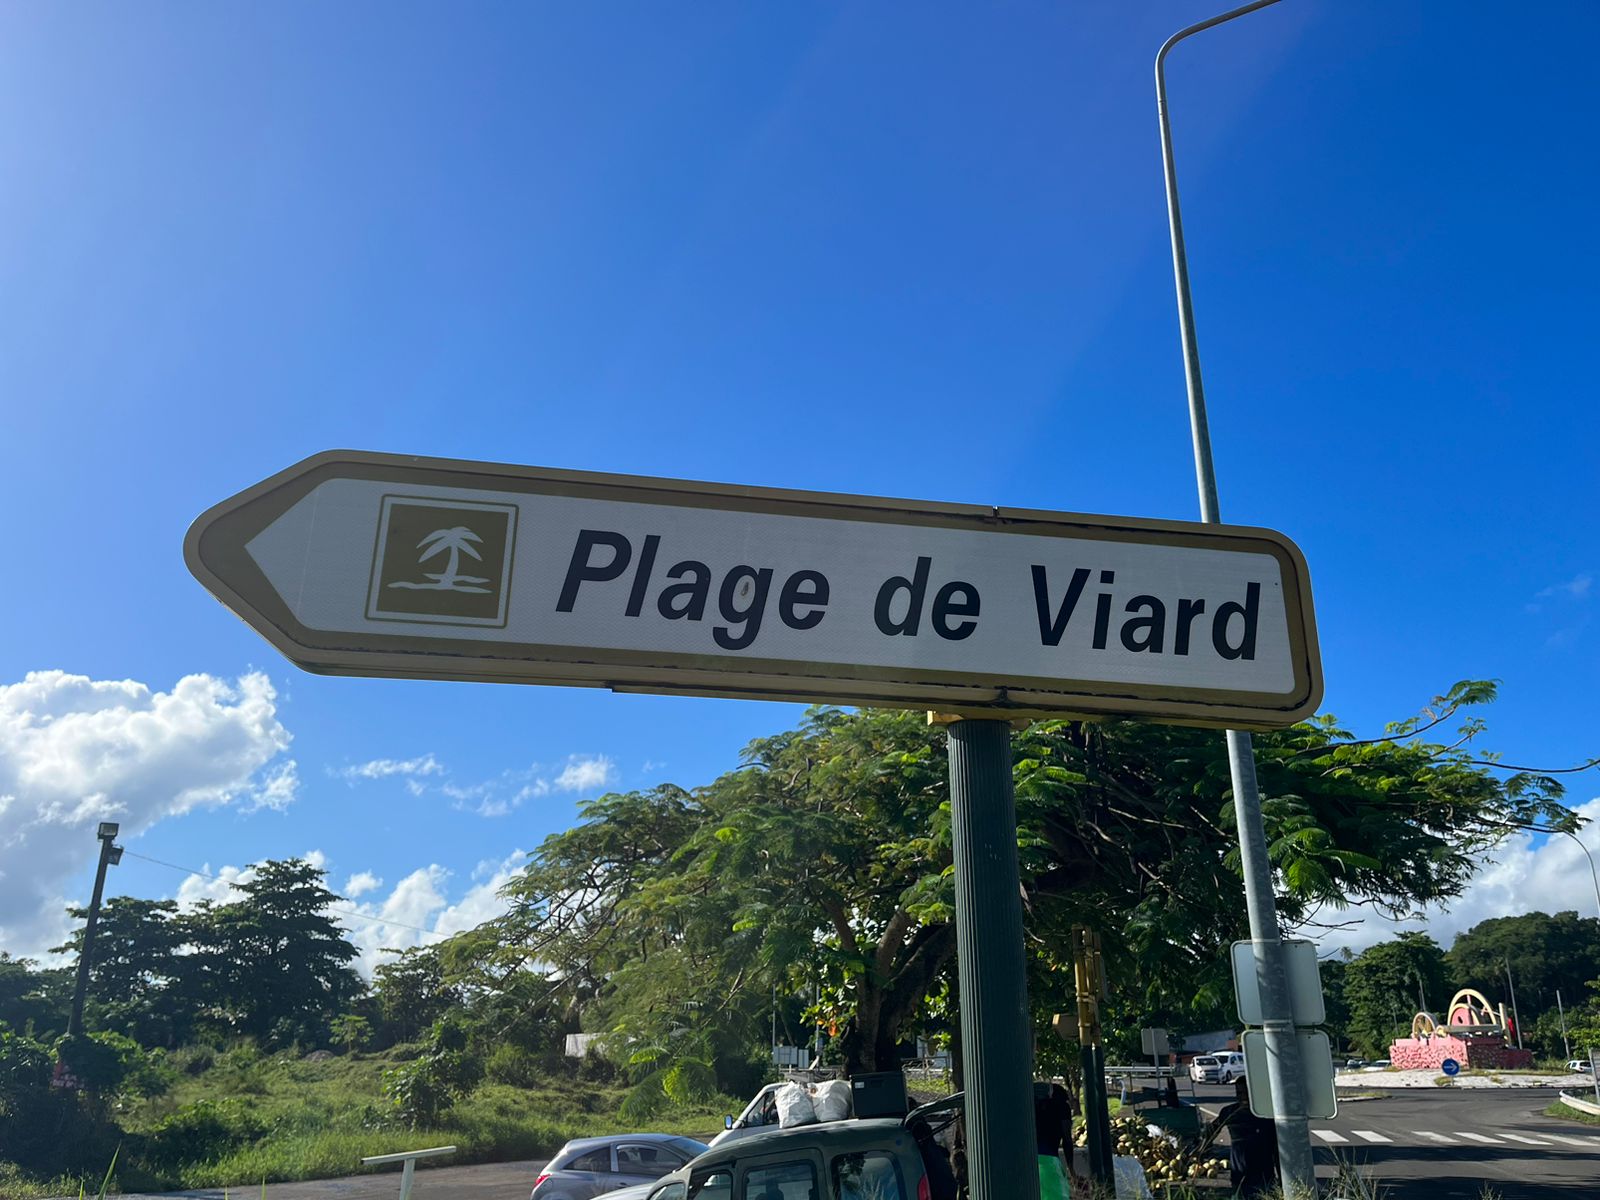     Cadavres découverts en Guadeloupe : le lien entre les deux affaires est confirmé 

